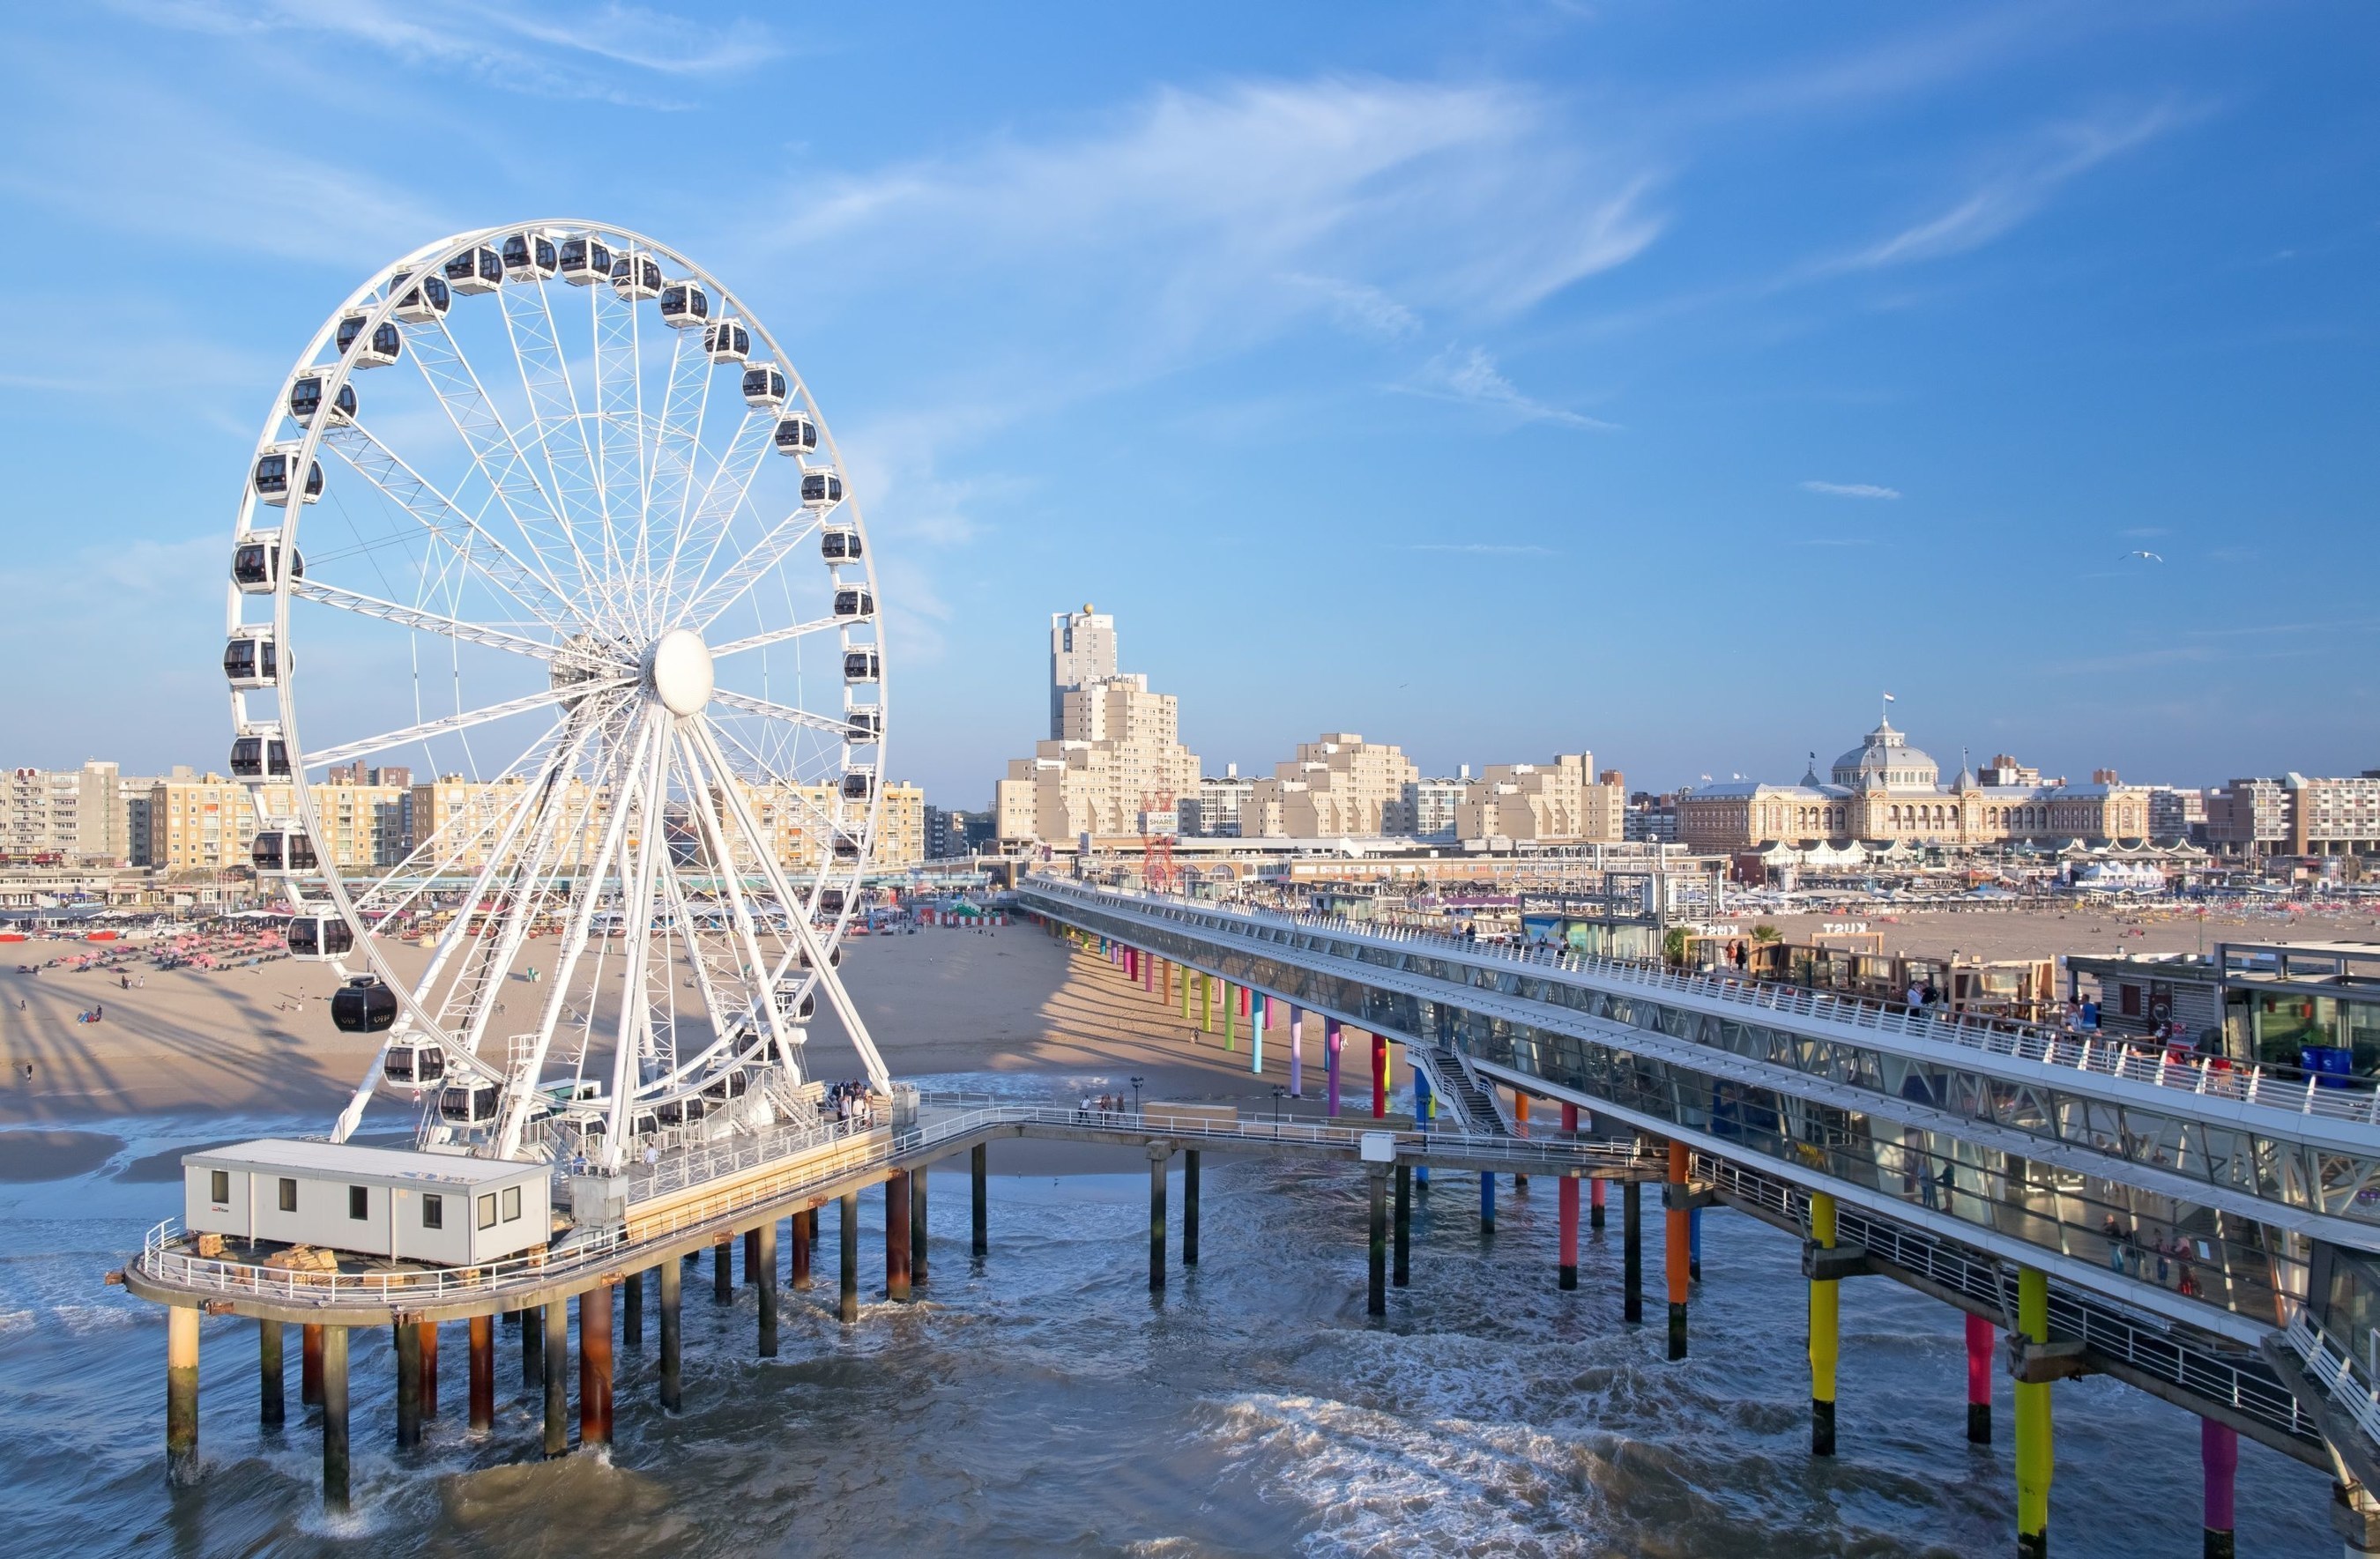 Europe's First Ferris Wheel Over Sea Opened on The Pier in Scheveningen (PRNewsFoto/Den Haag Marketing)